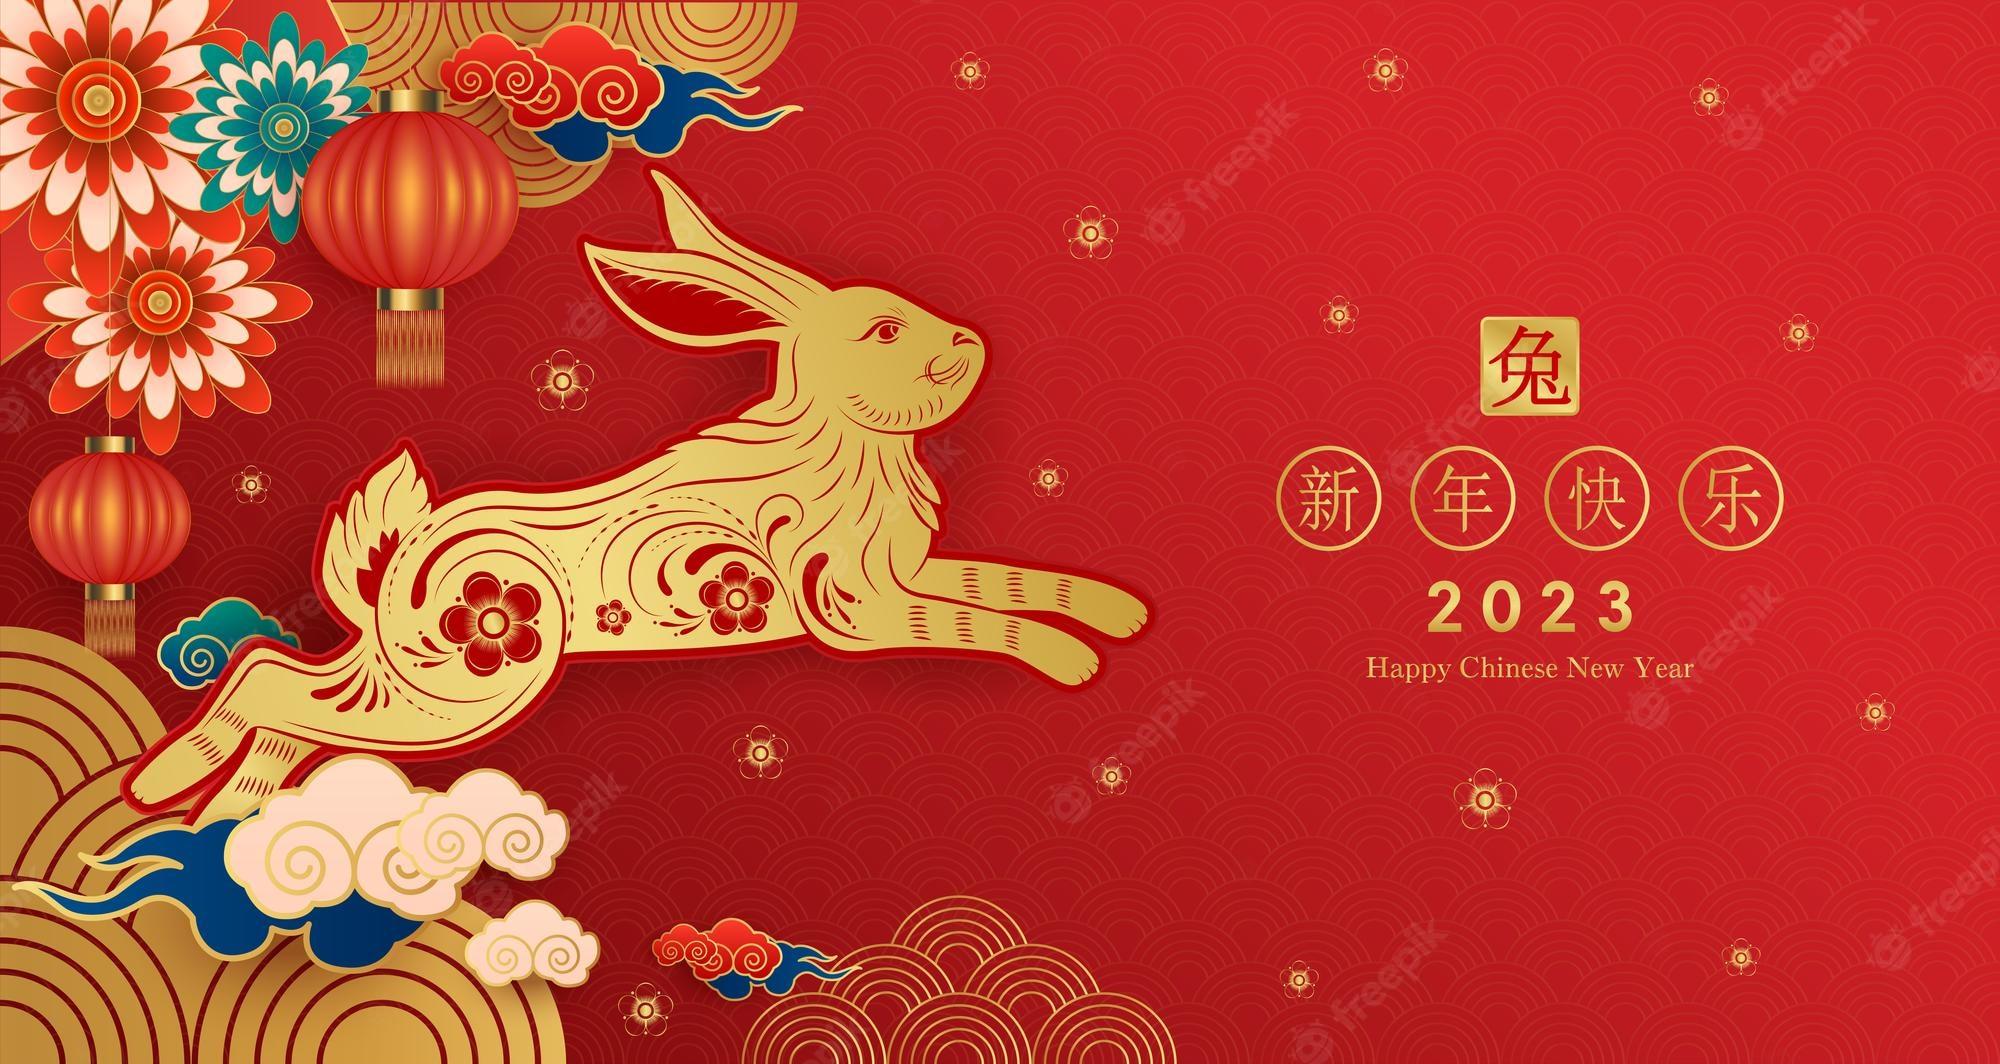 Premium Vector  Happy chinese new year 2023 year of the rabbit zodiac